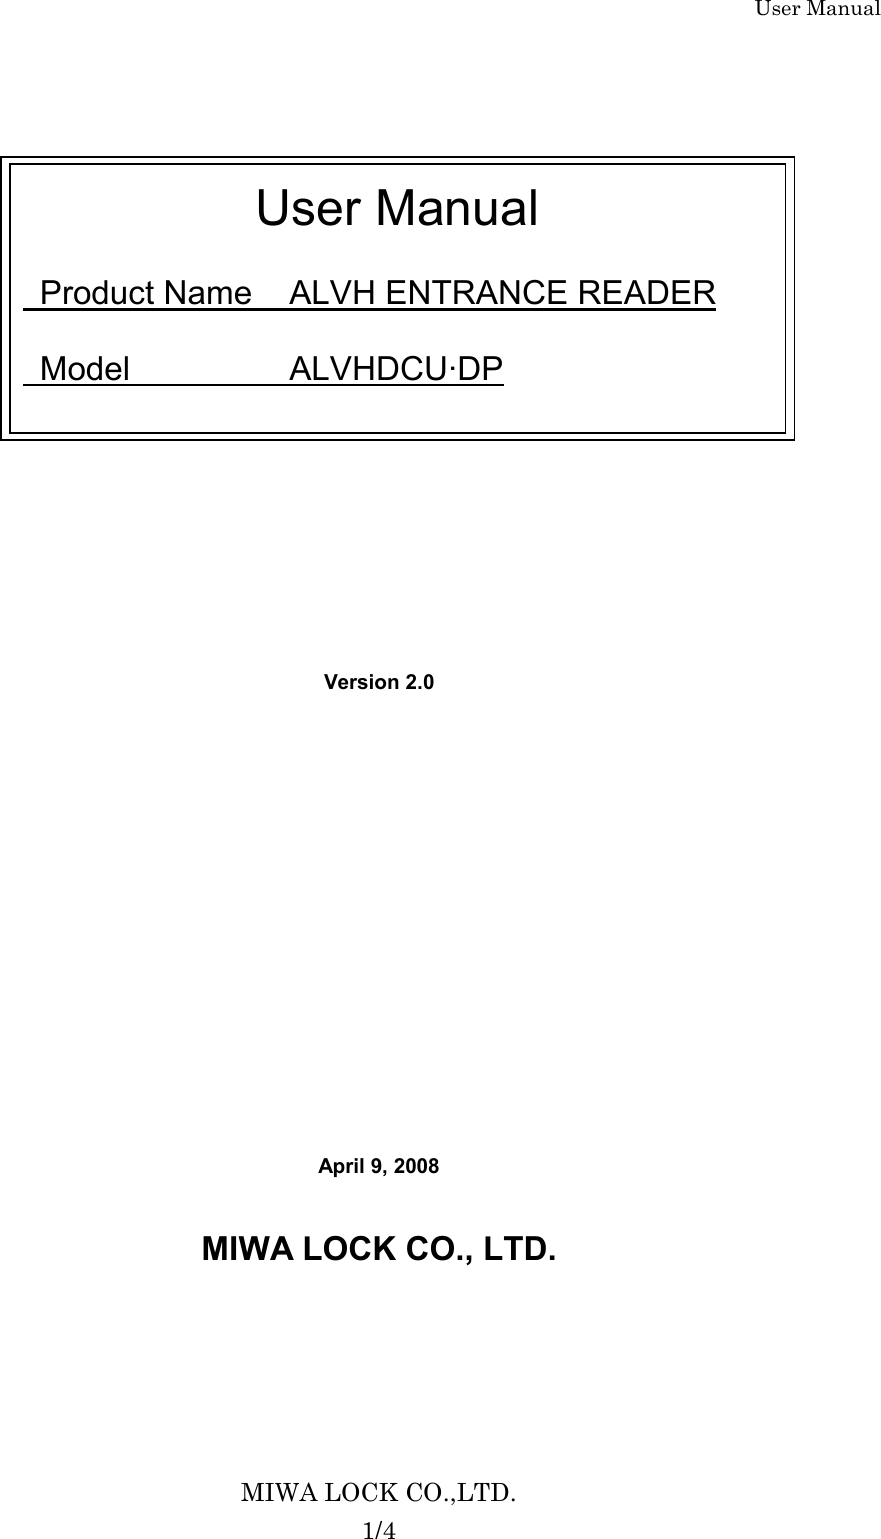 User Manual MIWA LOCK CO.,LTD. 1/4                   Version 2.0             April 9, 2008  MIWA LOCK CO., LTD.     User Manual    Product Name  ALVH ENTRANCE READER    Model    ALVHDCU·DP 